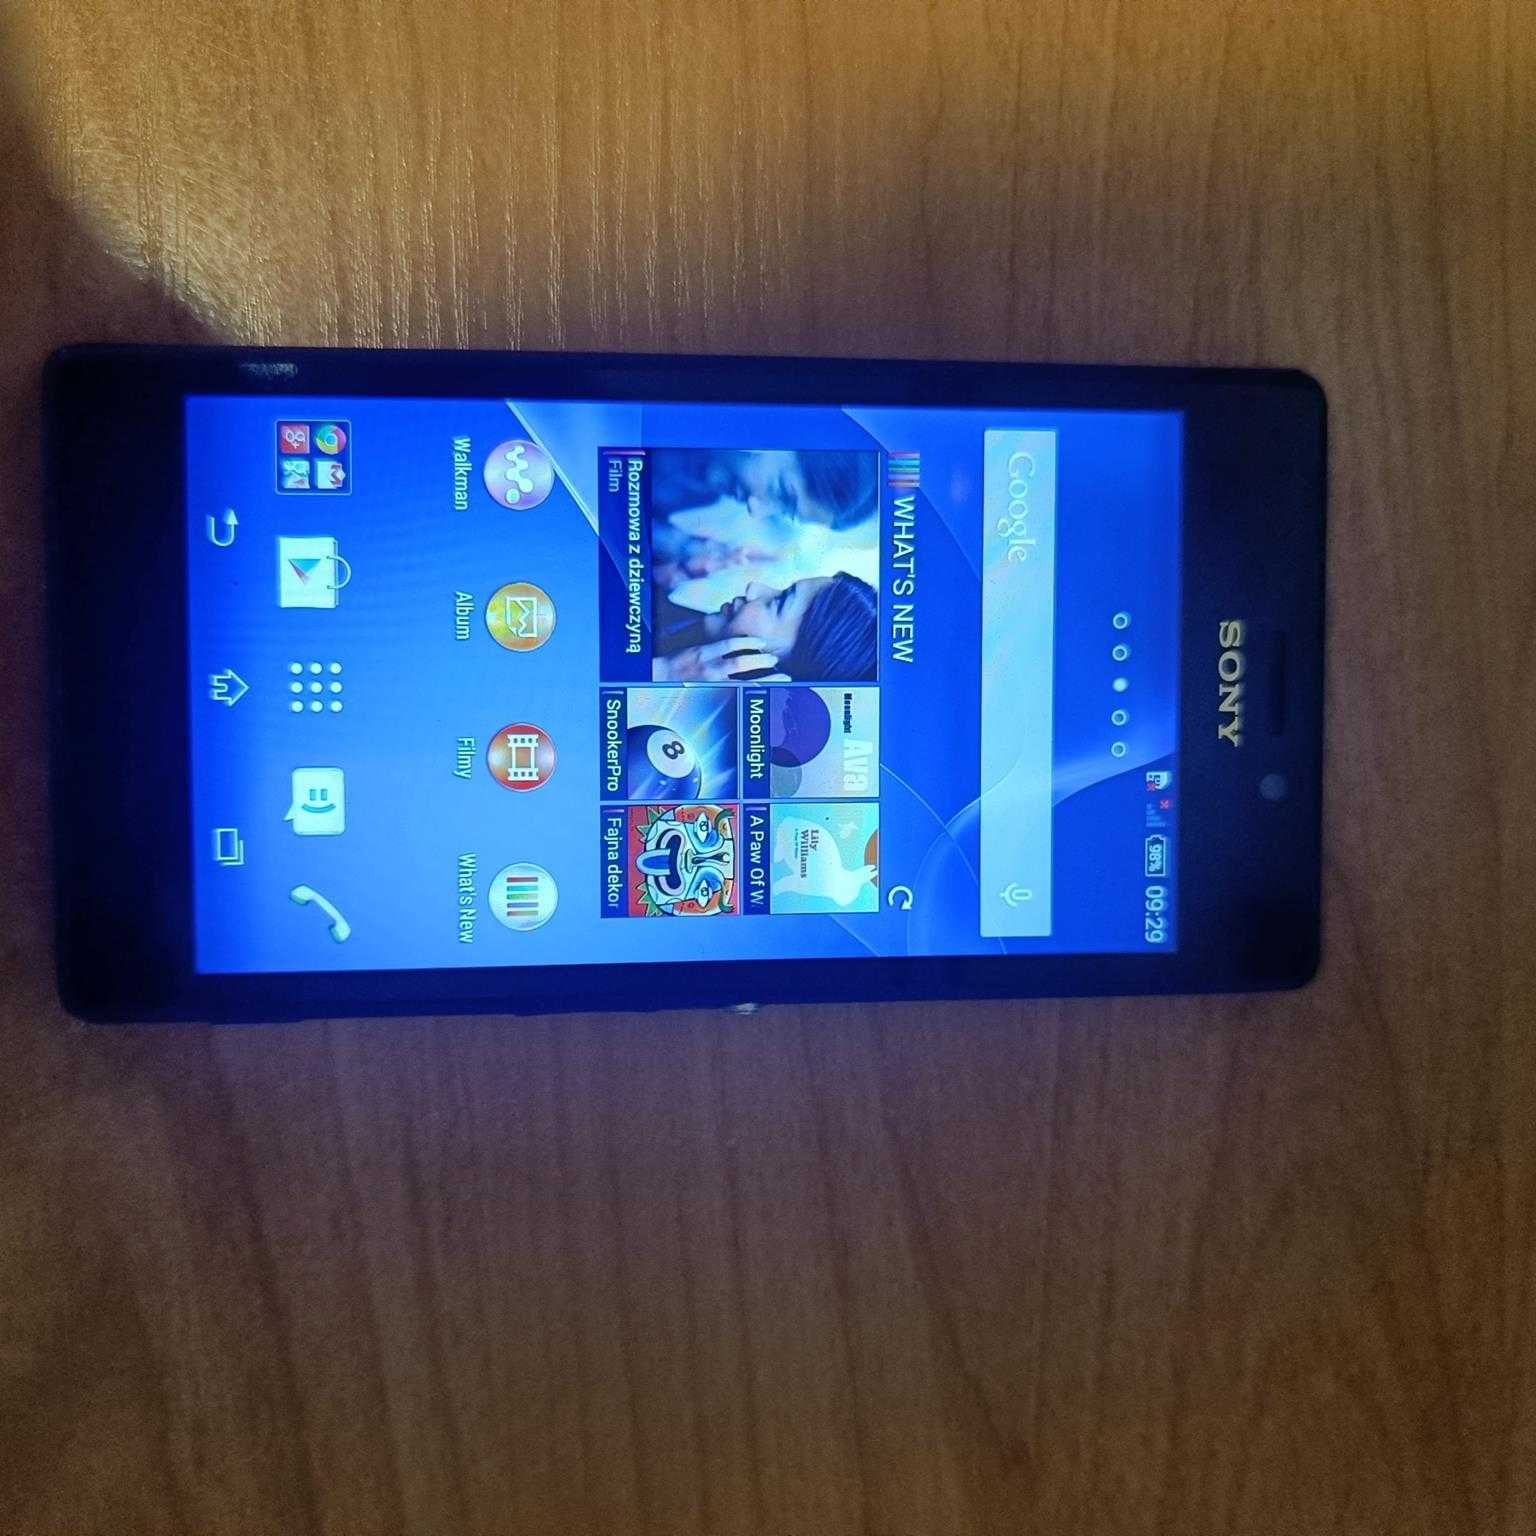 Nokia 6300, Sony Xperia, Motorola Moto